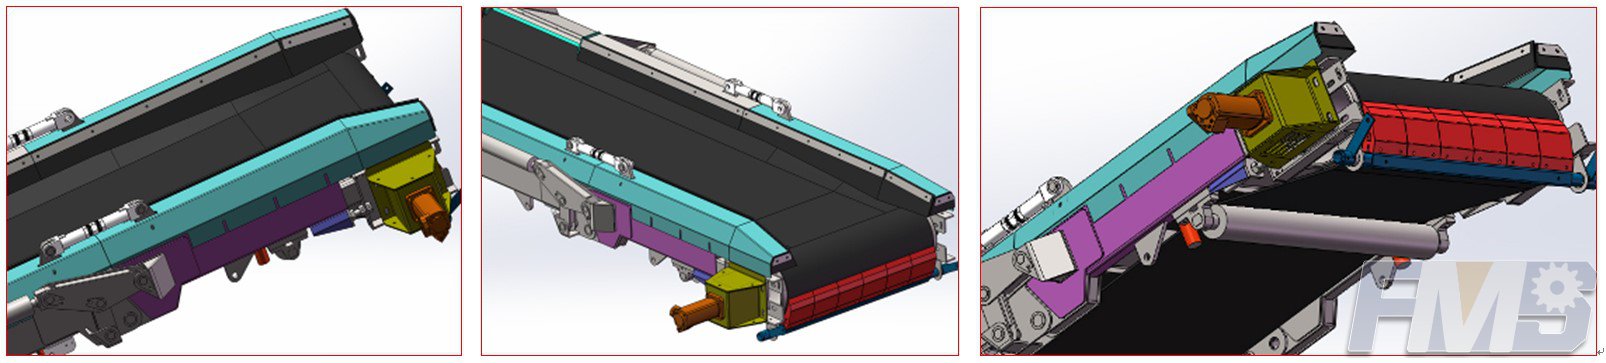 headstock of belt conveyor and regulated speed motor working diagram